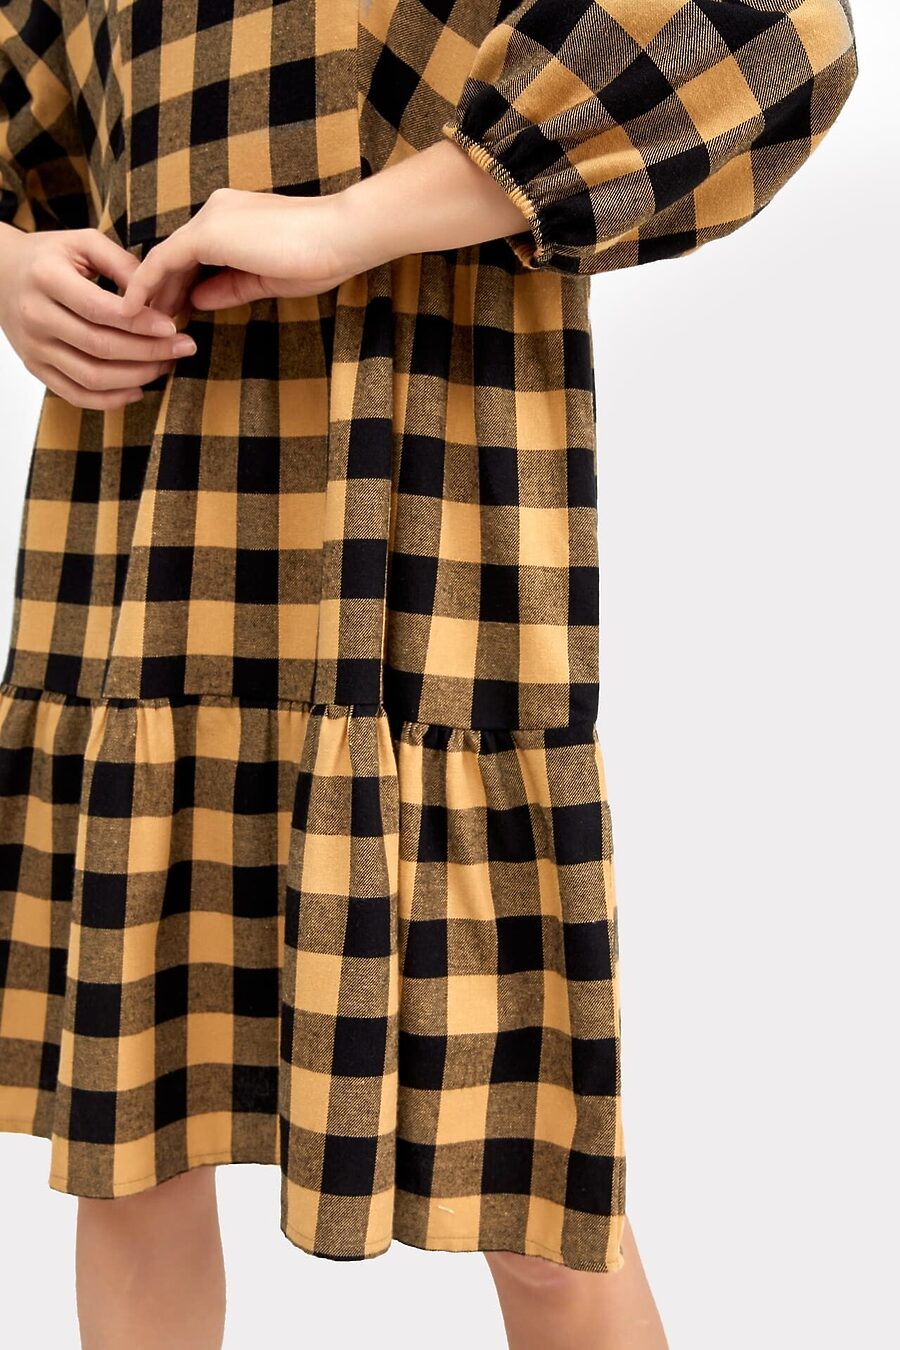 Платье MARK FORMELLE (822950), купить в Moyo.moda